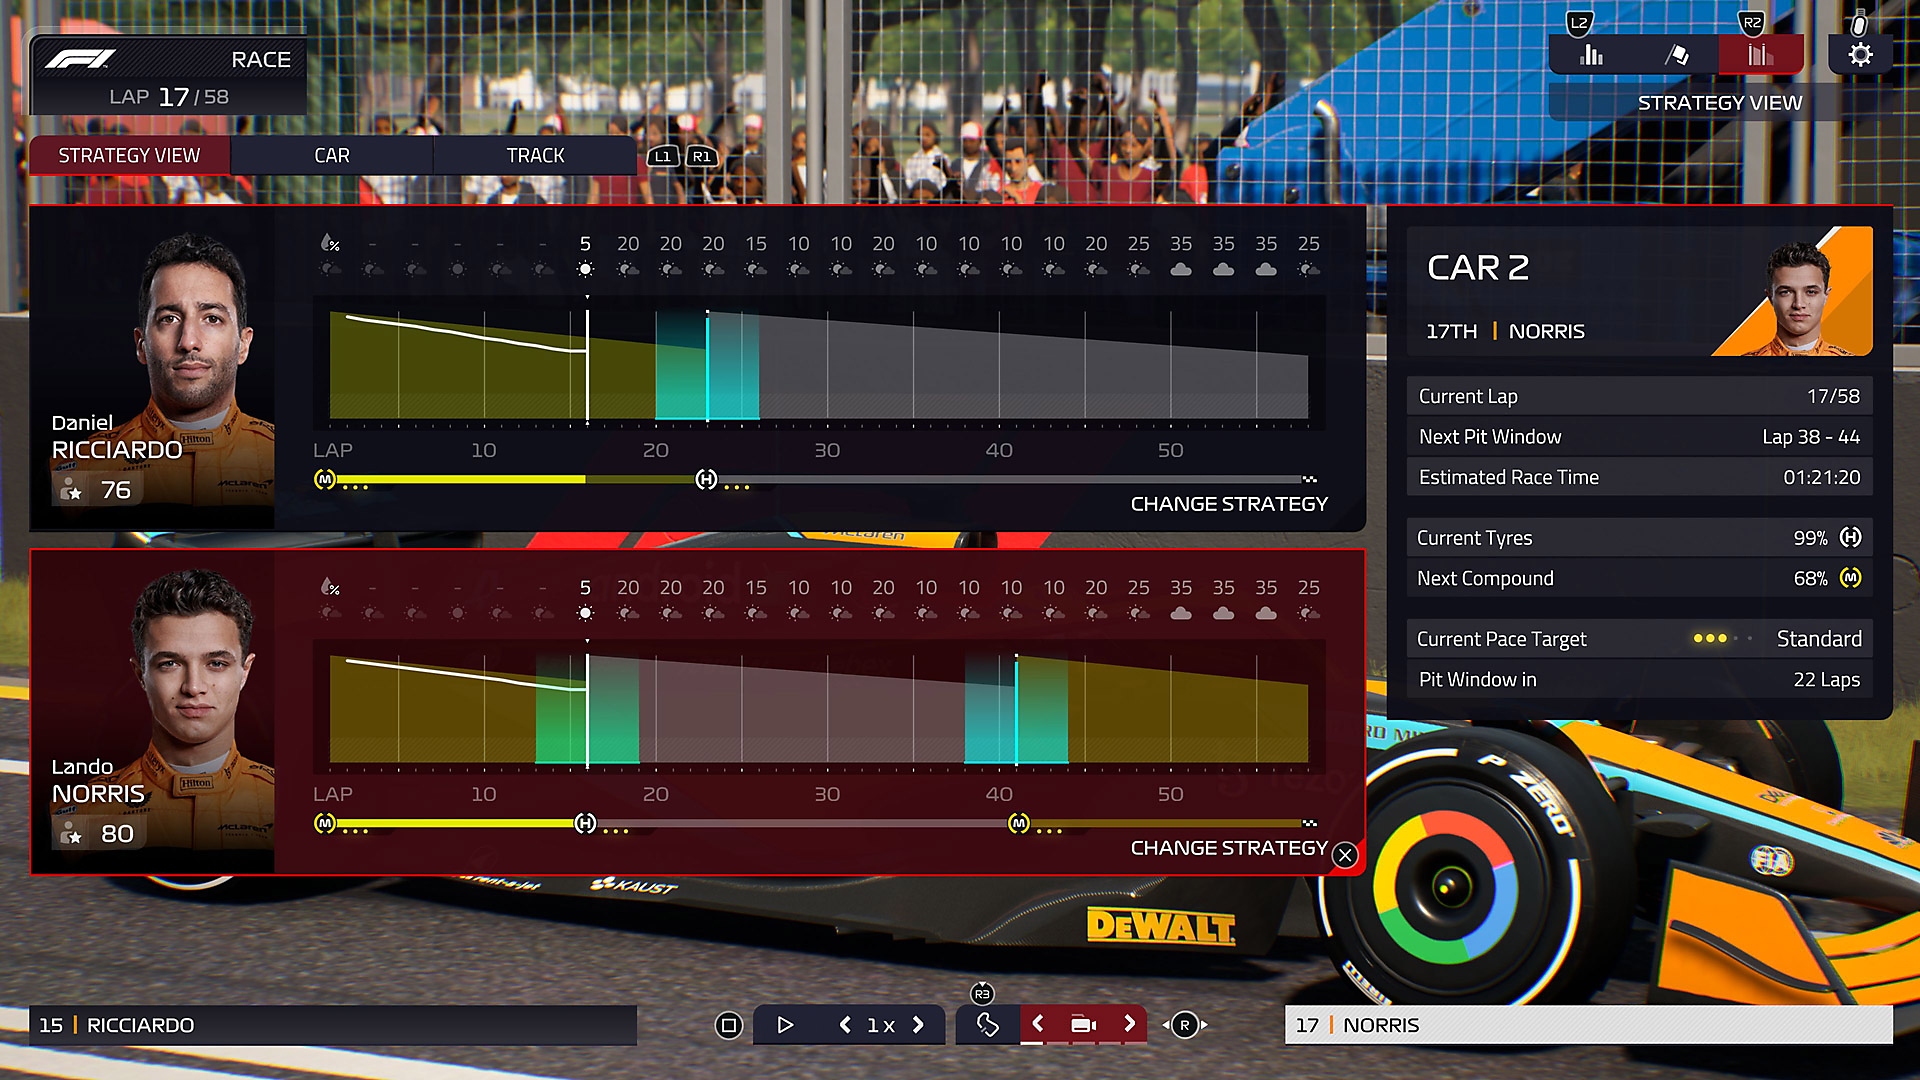 F1 Manager 2022 – zrzut ekranu interfejsu gry porównujący dwóch kierowców